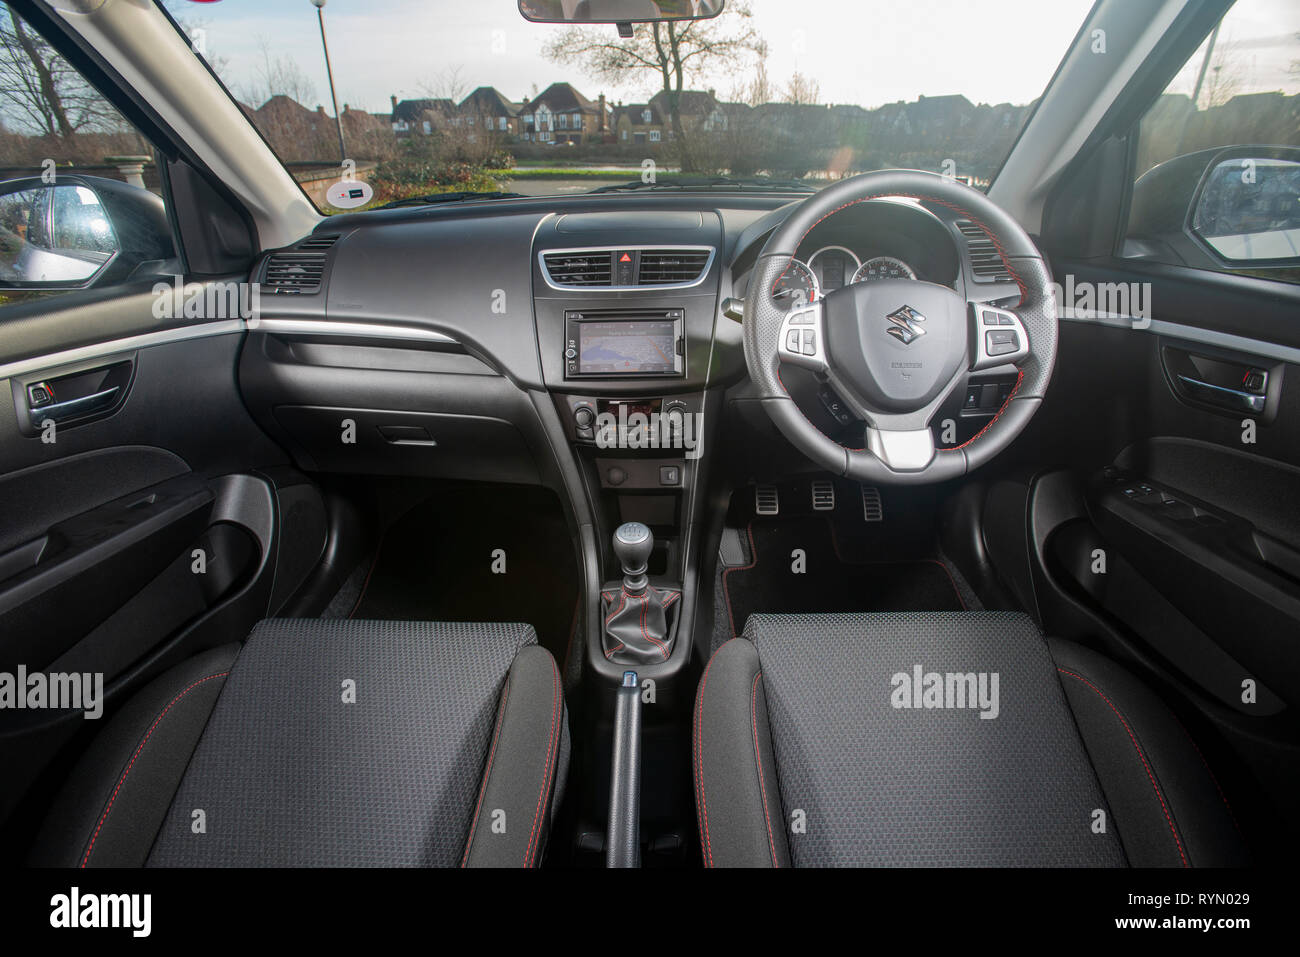 Indoor car cover fits Suzuki Celerio 2014-present $ 135